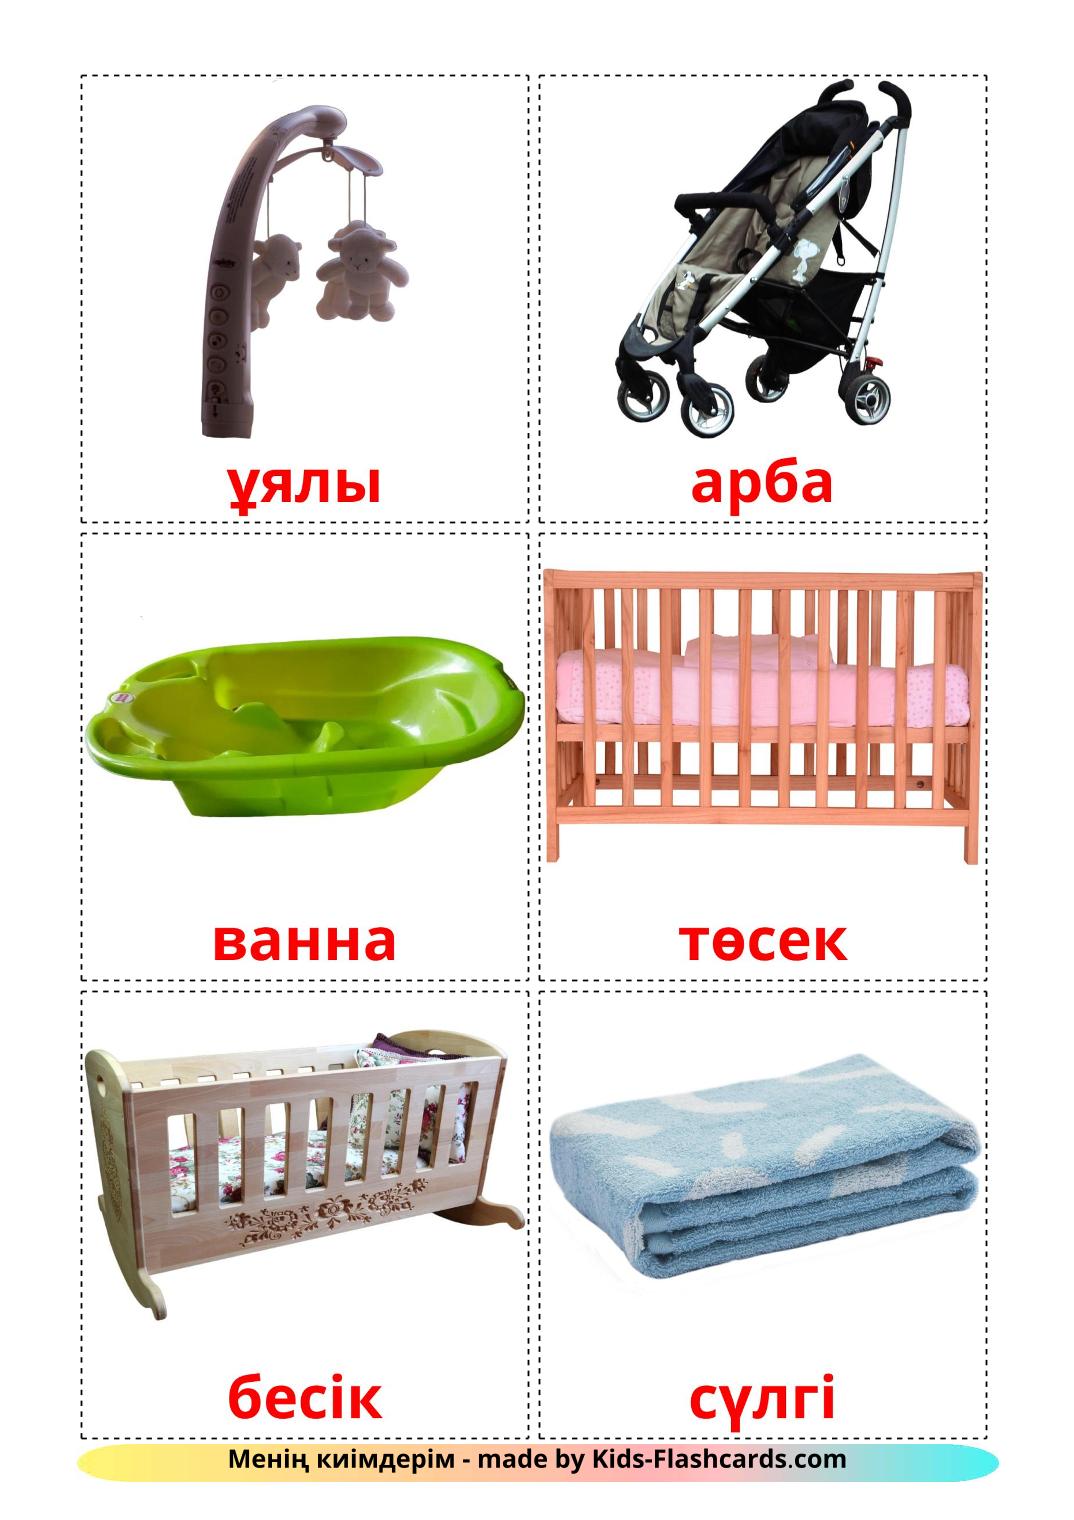 Coisas de Bebê - 19 Flashcards kazakhes gratuitos para impressão